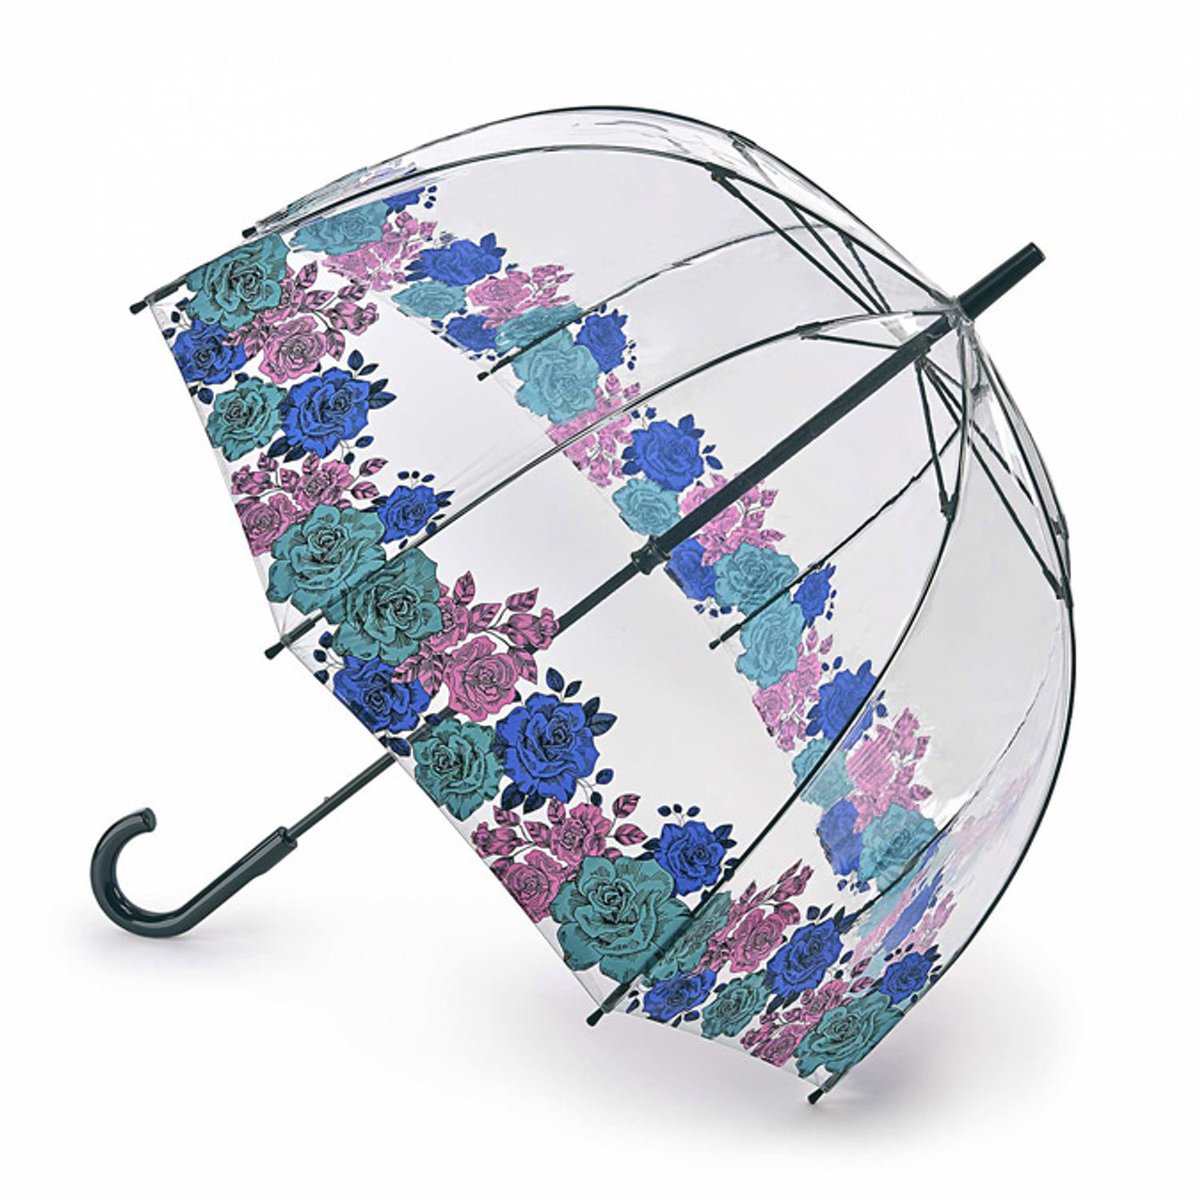 「フルトンの傘、本当素晴らしい 」|江戸川治🧜‍♀️🦭🌊のイラスト